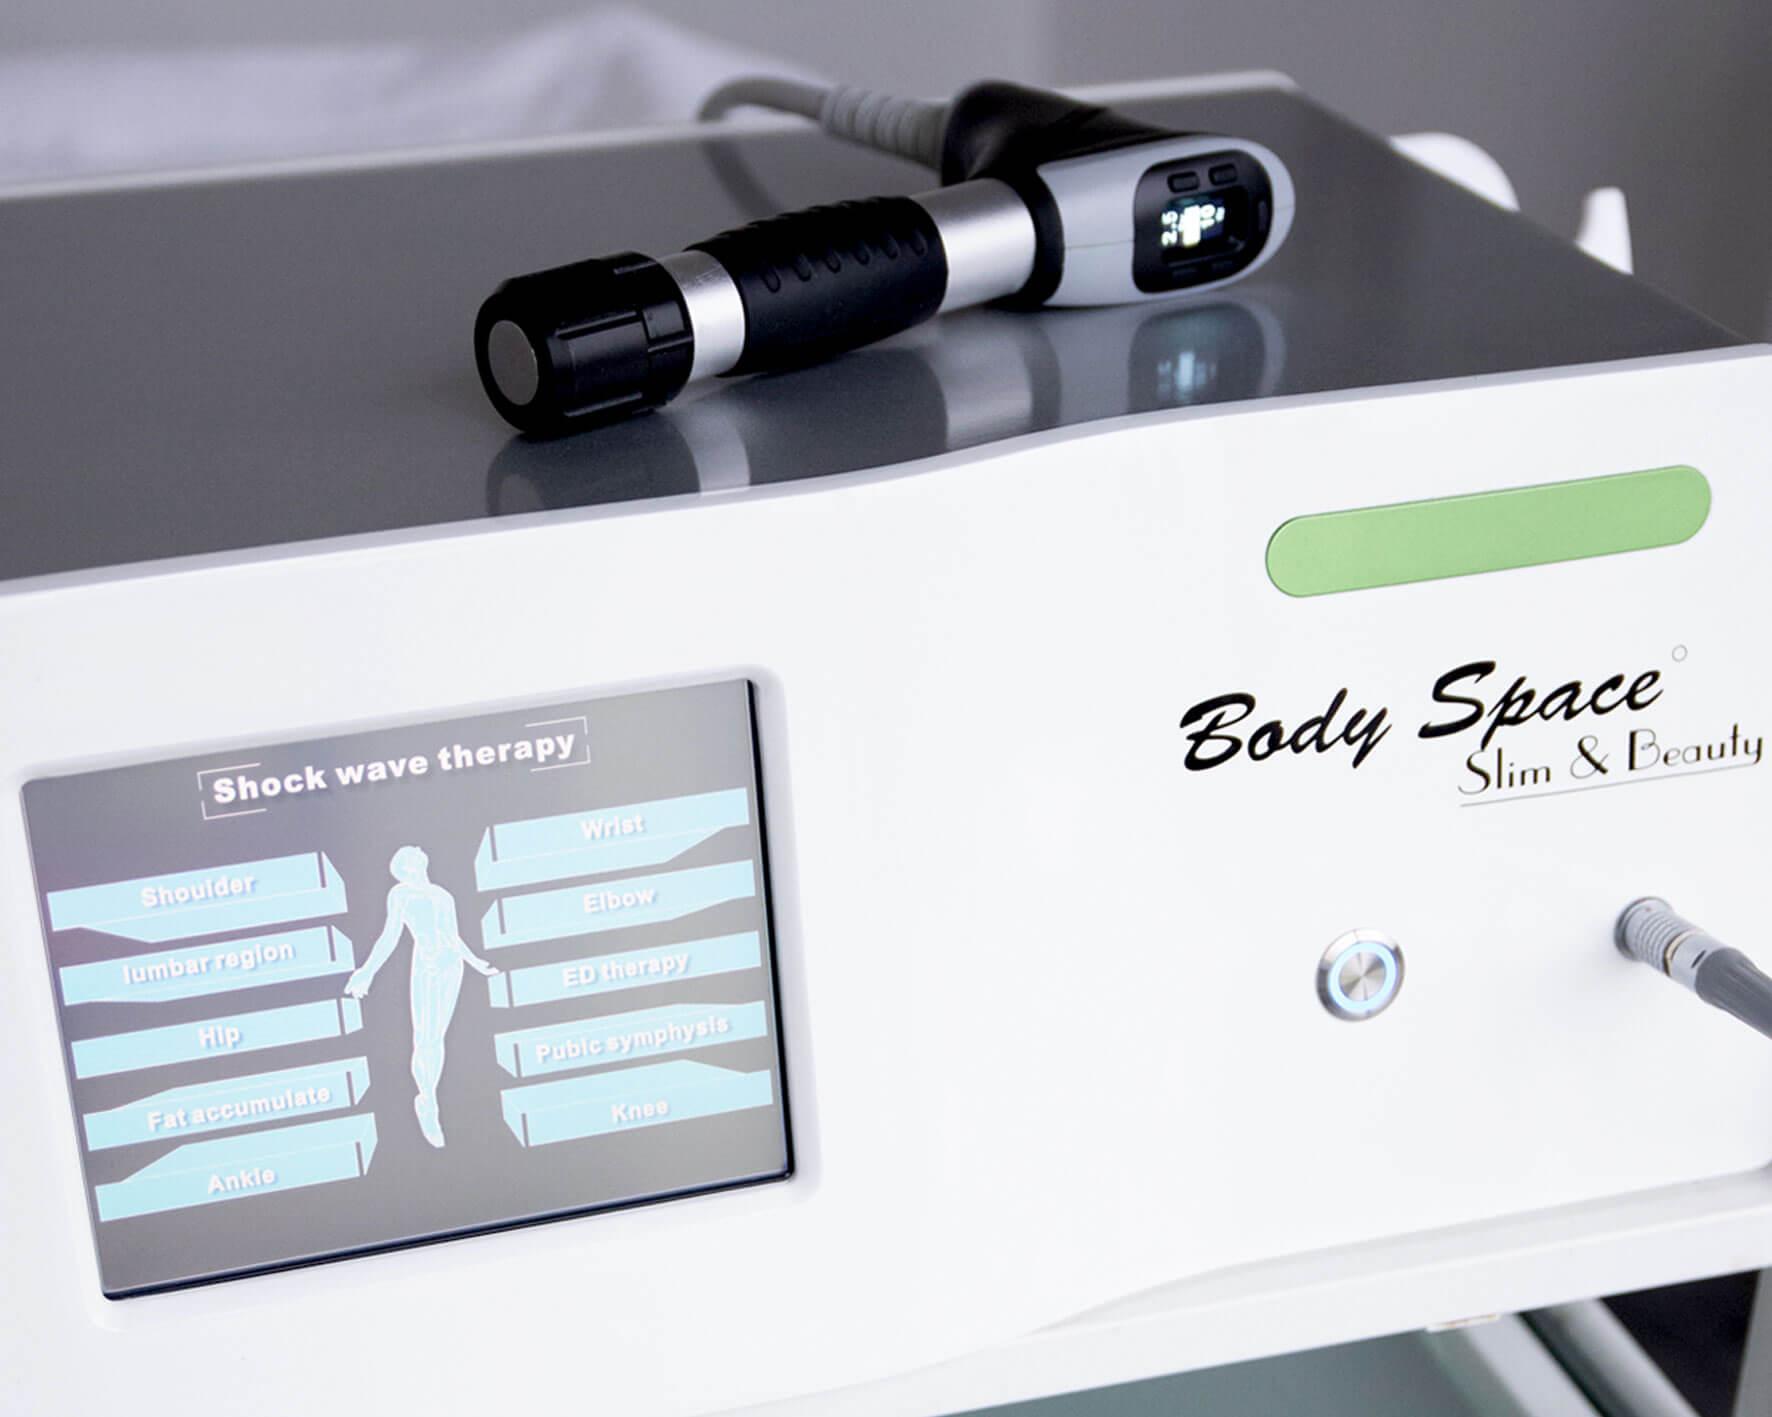 Fala uderzeniowa ShockWave Body Space - Urządzenie kosmetyczne do terapii dźwiękową falą akustyczną. Jedna z najskuteczniejszych metod redukcji cellulitu i tkanki tłuszczowej